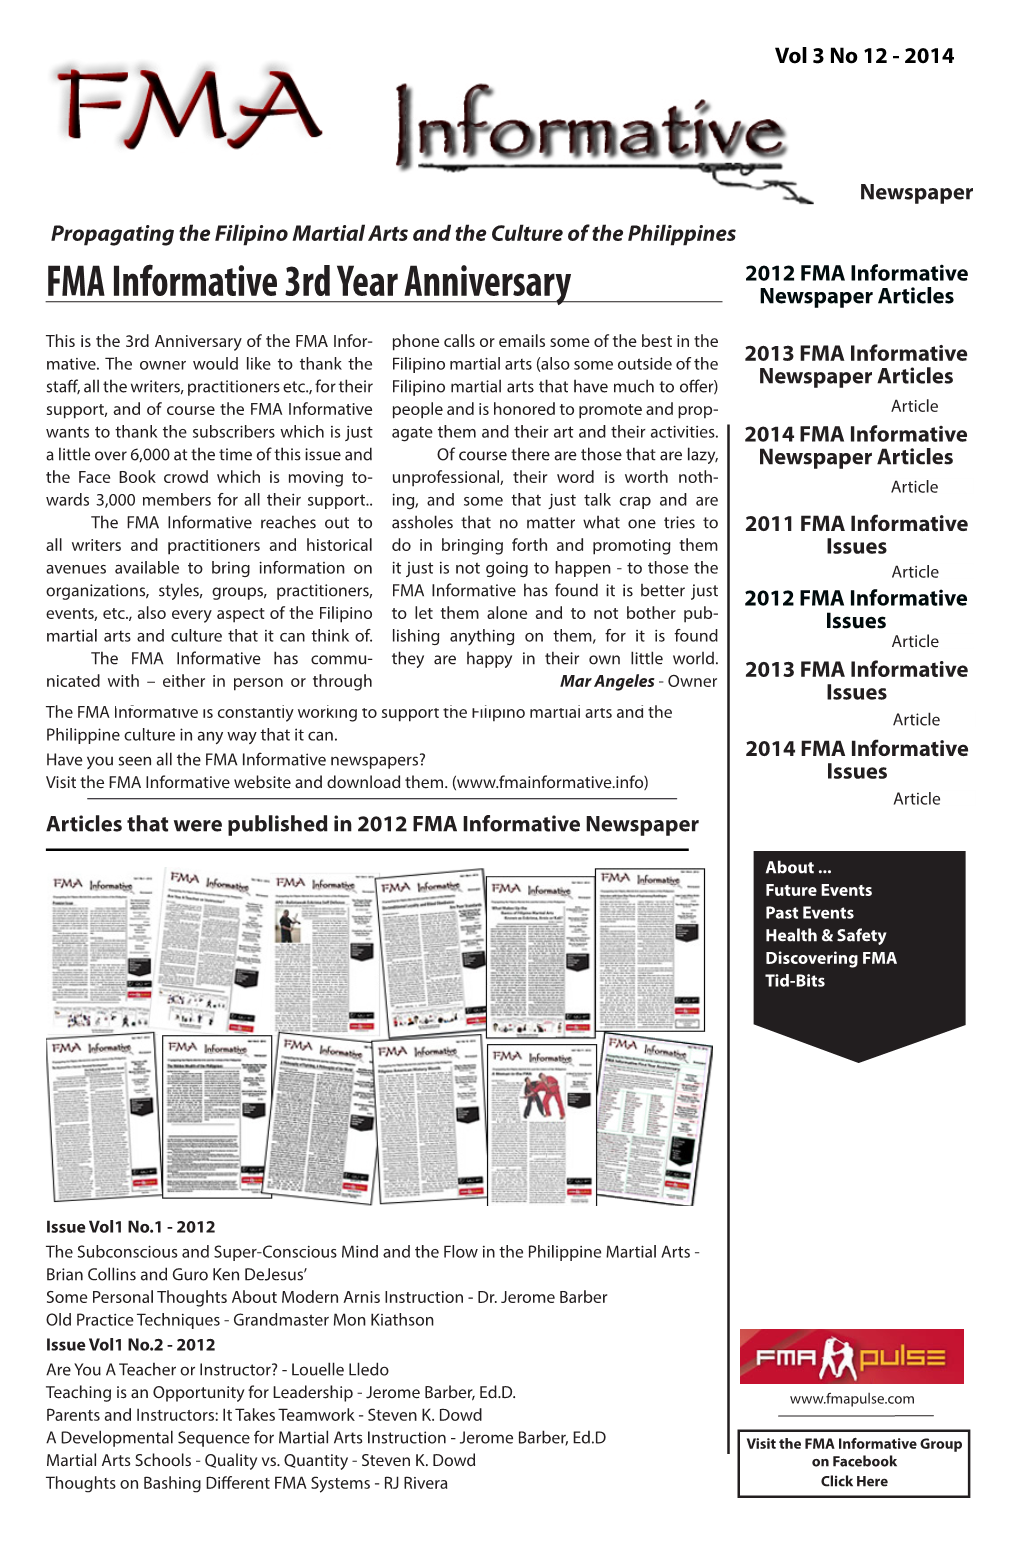 FMA Informative Newspaper Vol3 No.12